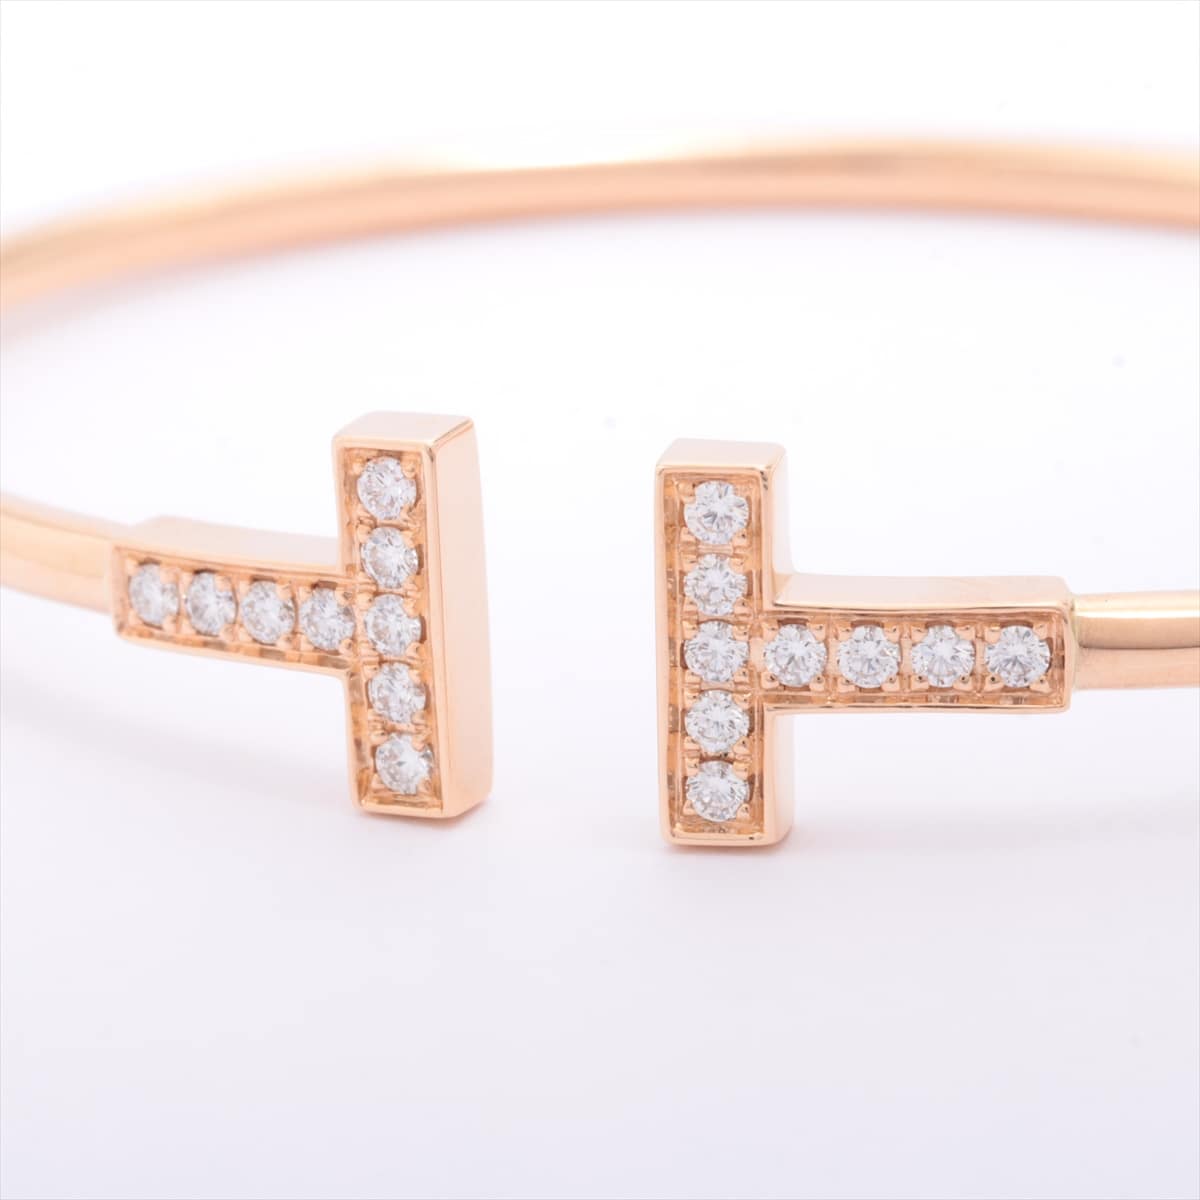 Tiffany T Wire diamond Bracelet 750(PG) 7.2g